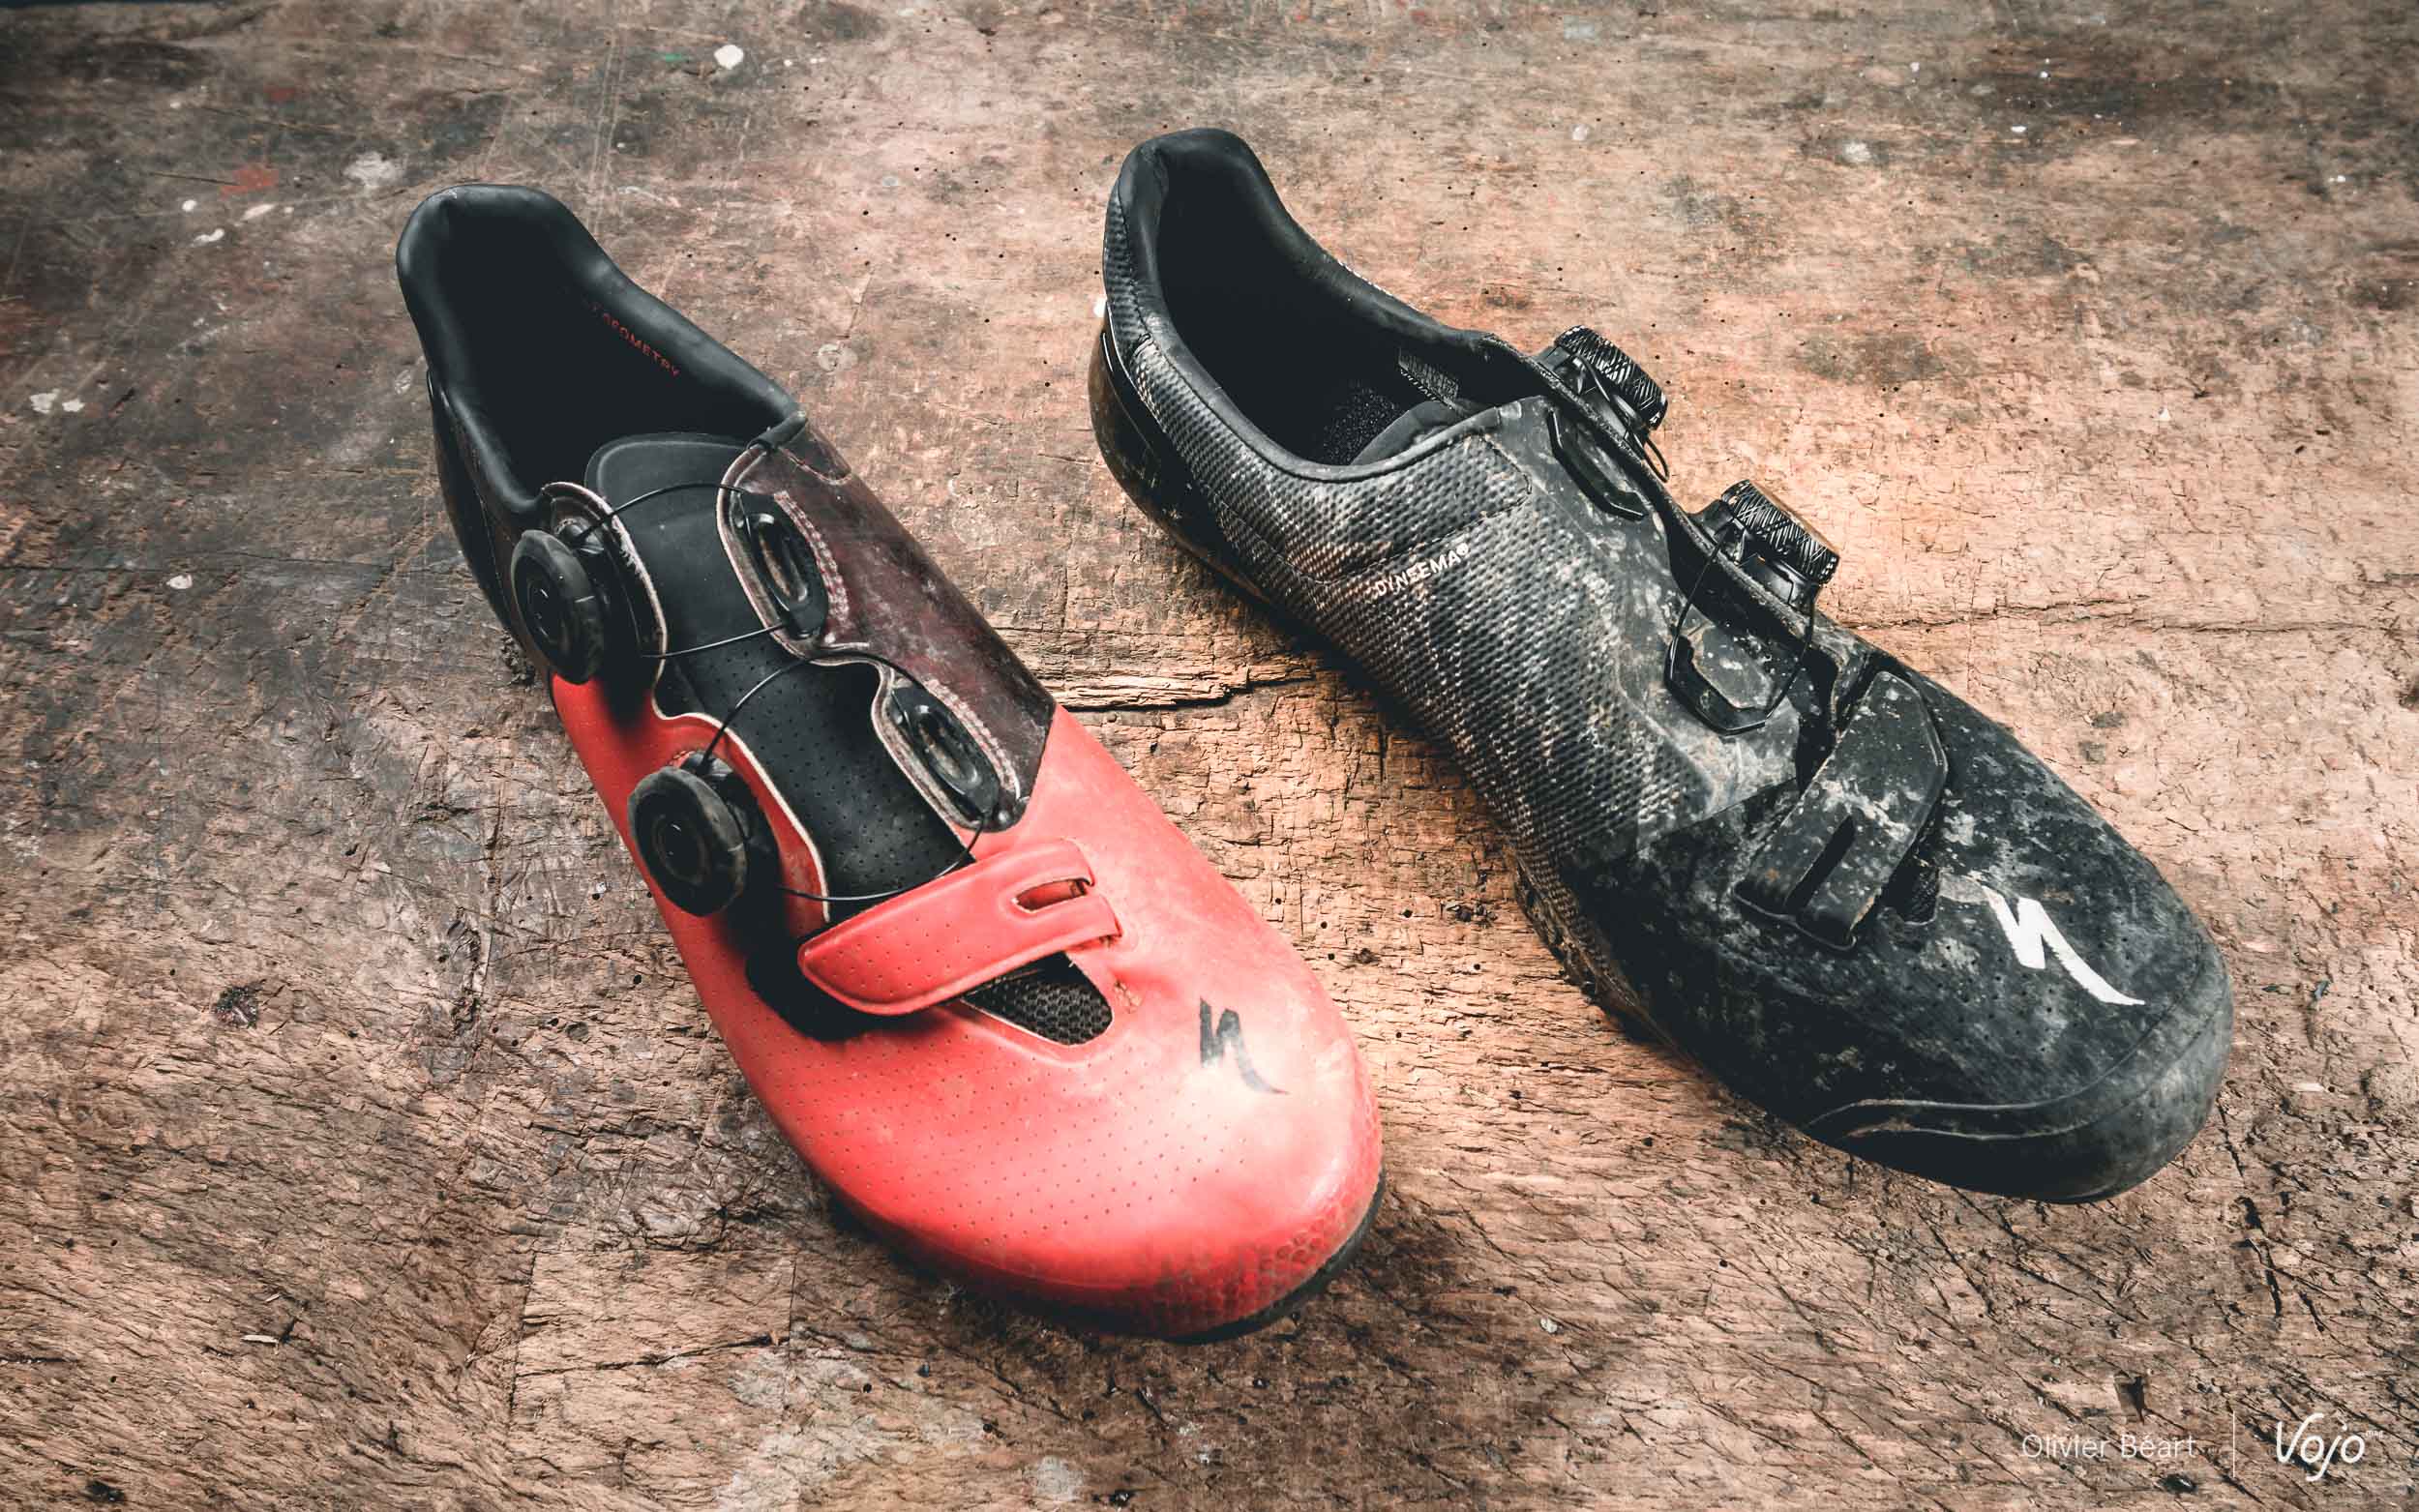 De vorige en de huidige generatie van de S-Works-schoenen samen op de foto.